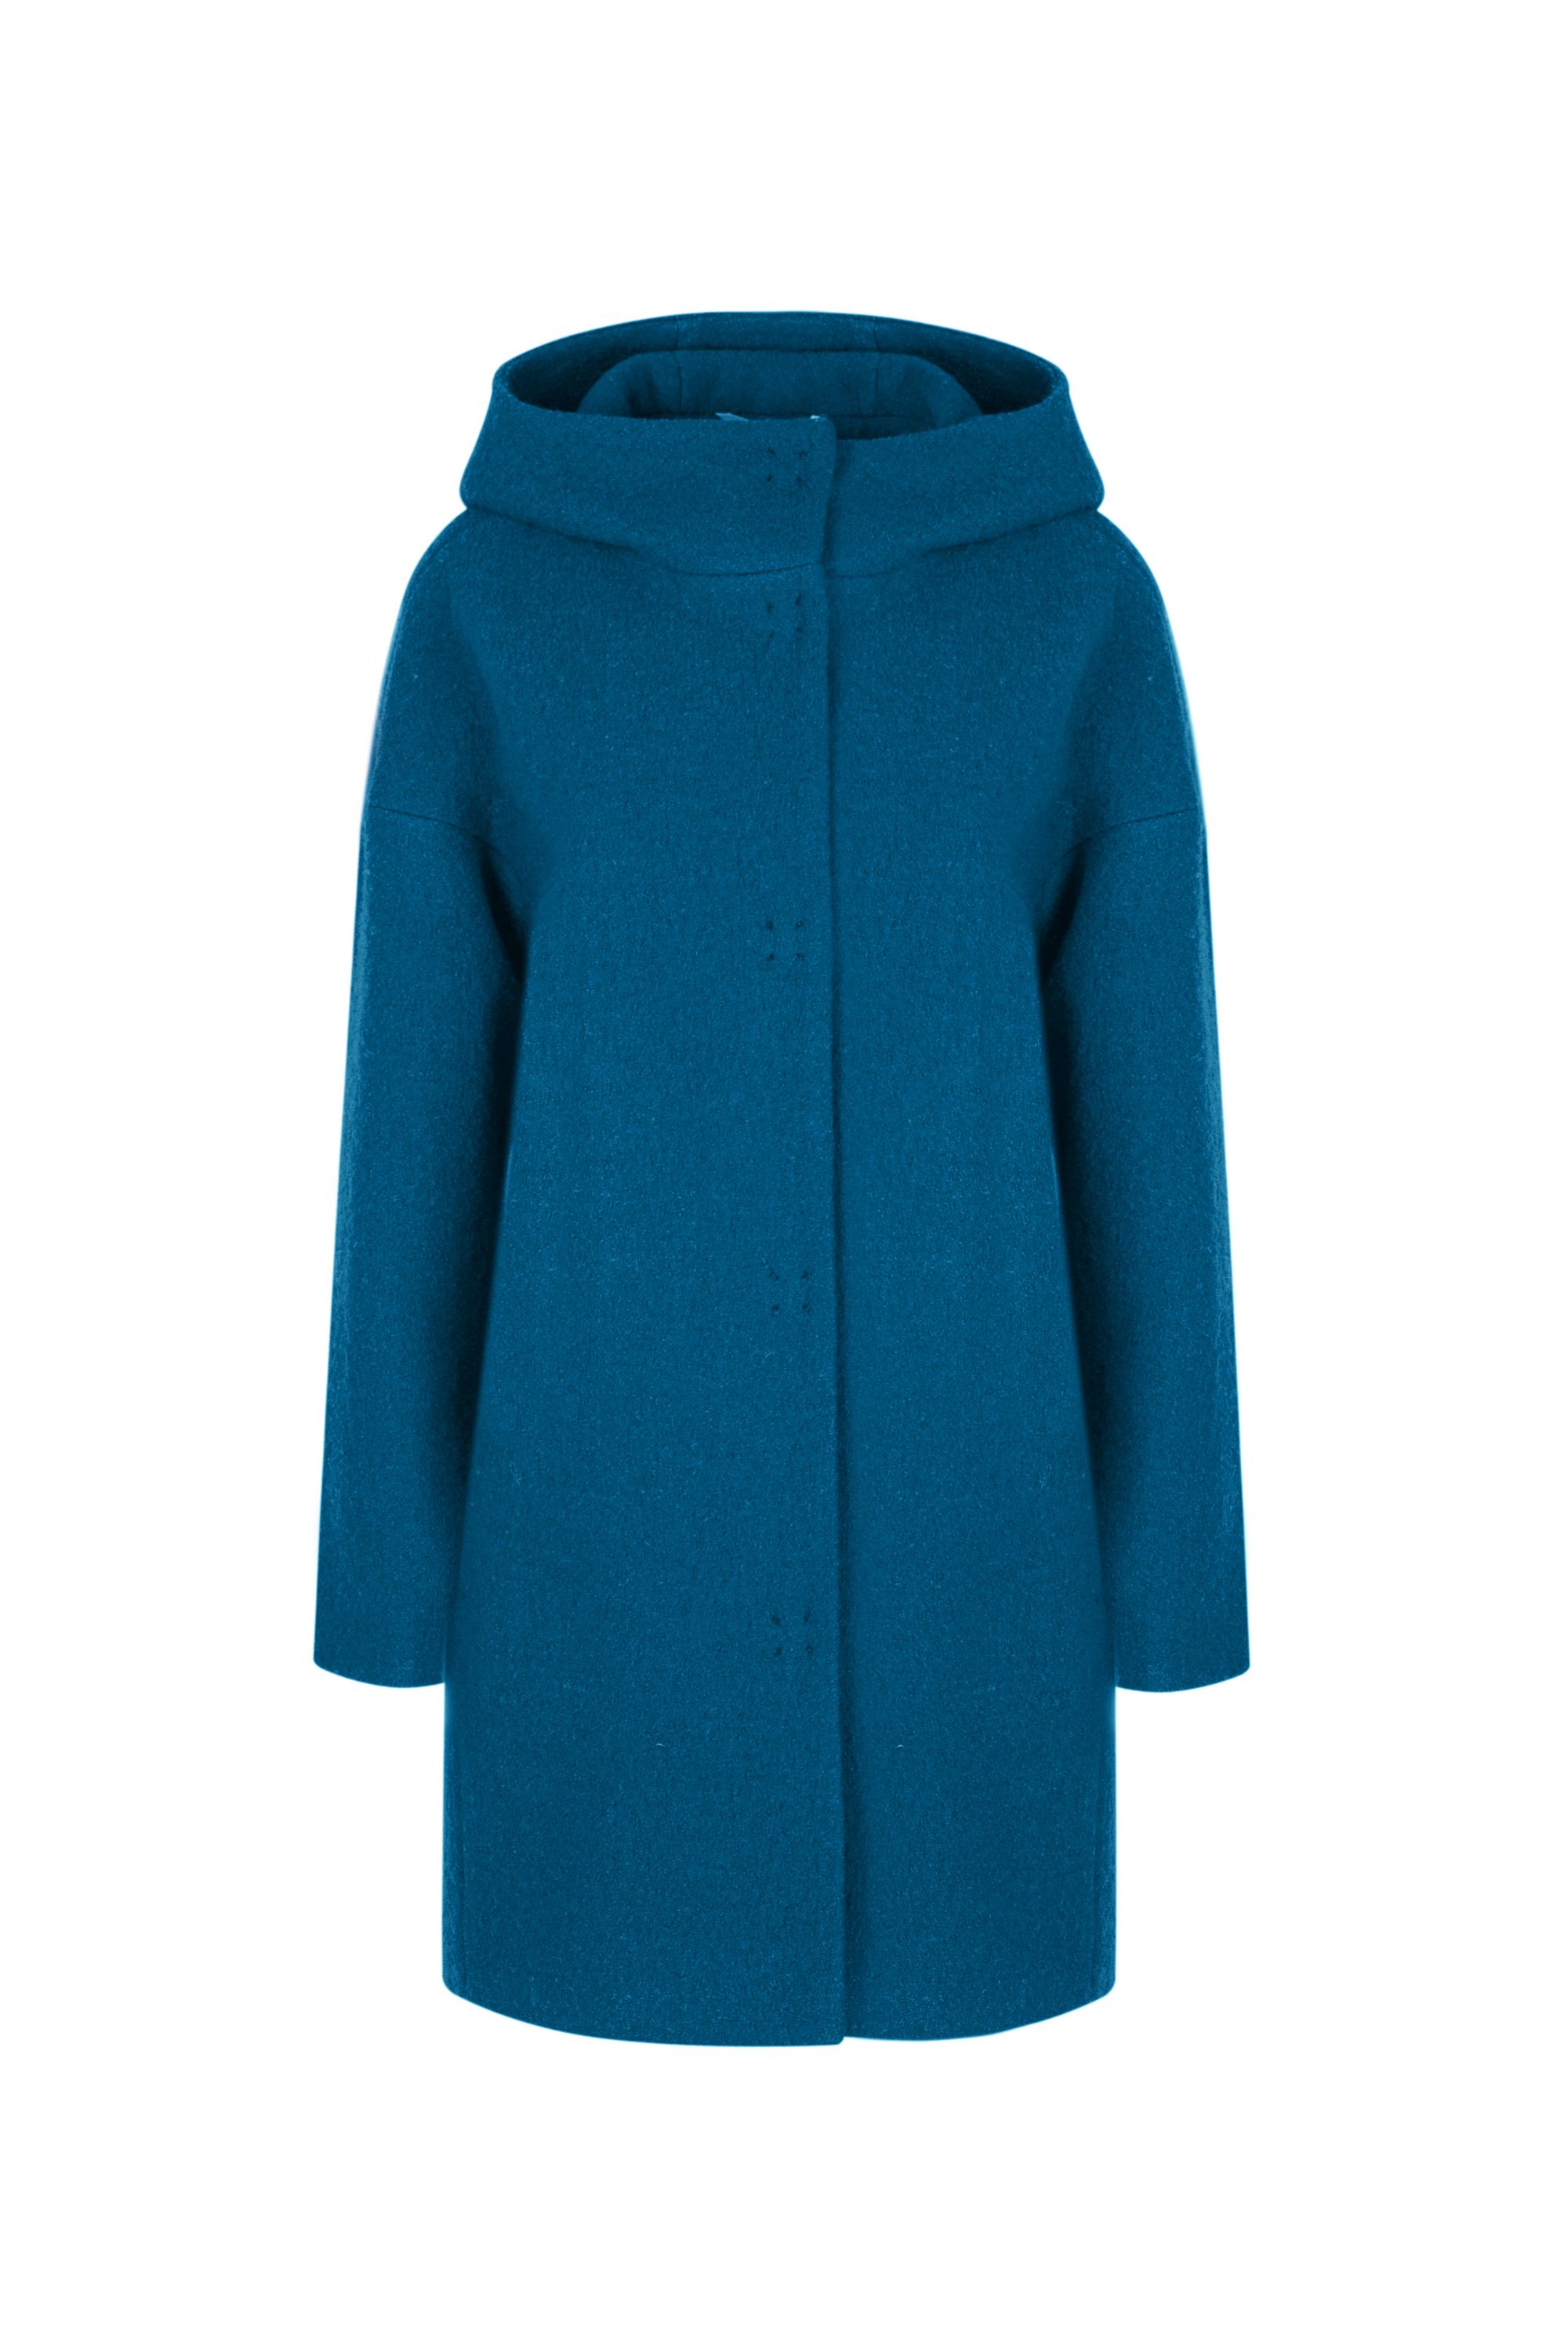 Пальто женское демисезонное 1-12841-1. Фото 1.